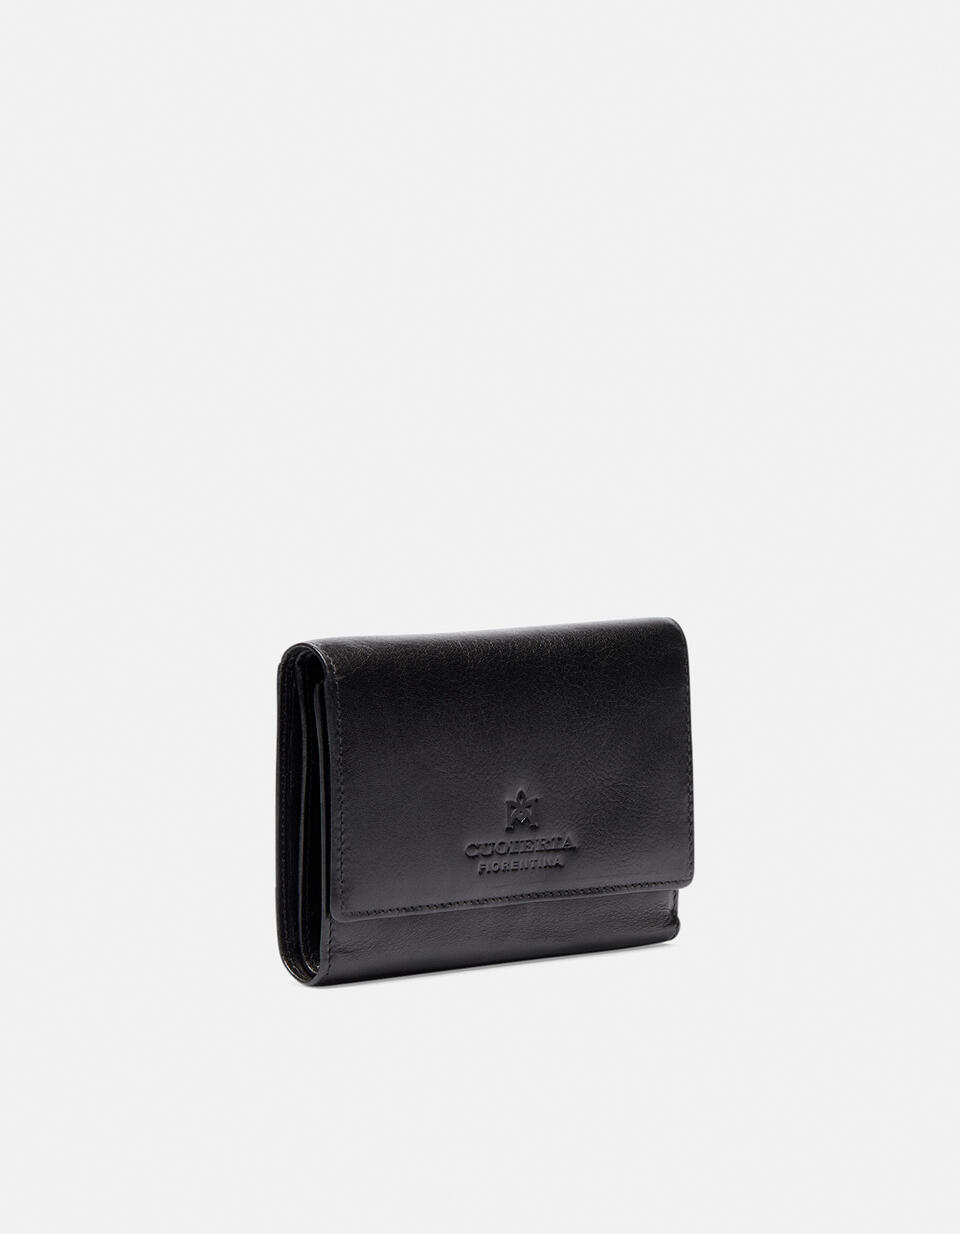 Leather wallet - Women's Wallets - Women's Wallets | Wallets NERO - Women's Wallets - Women's Wallets | WalletsCuoieria Fiorentina